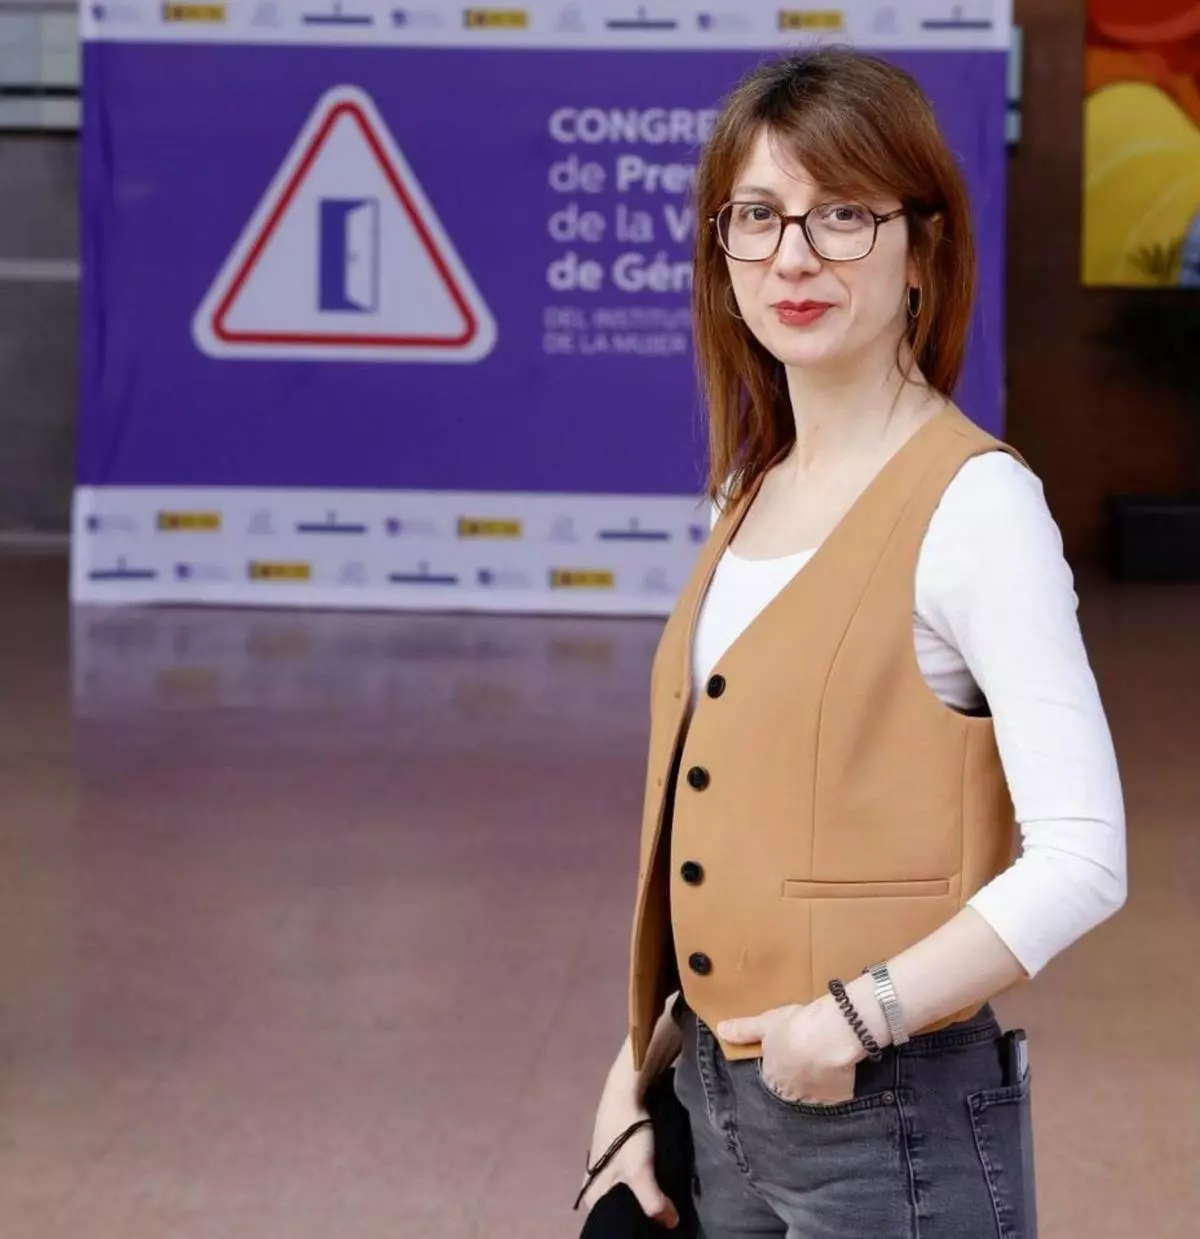 La dura afirmación de una de las expertas que cerró el congreso feminista en Gijón: "España es uno de los países más puteros del mundo"